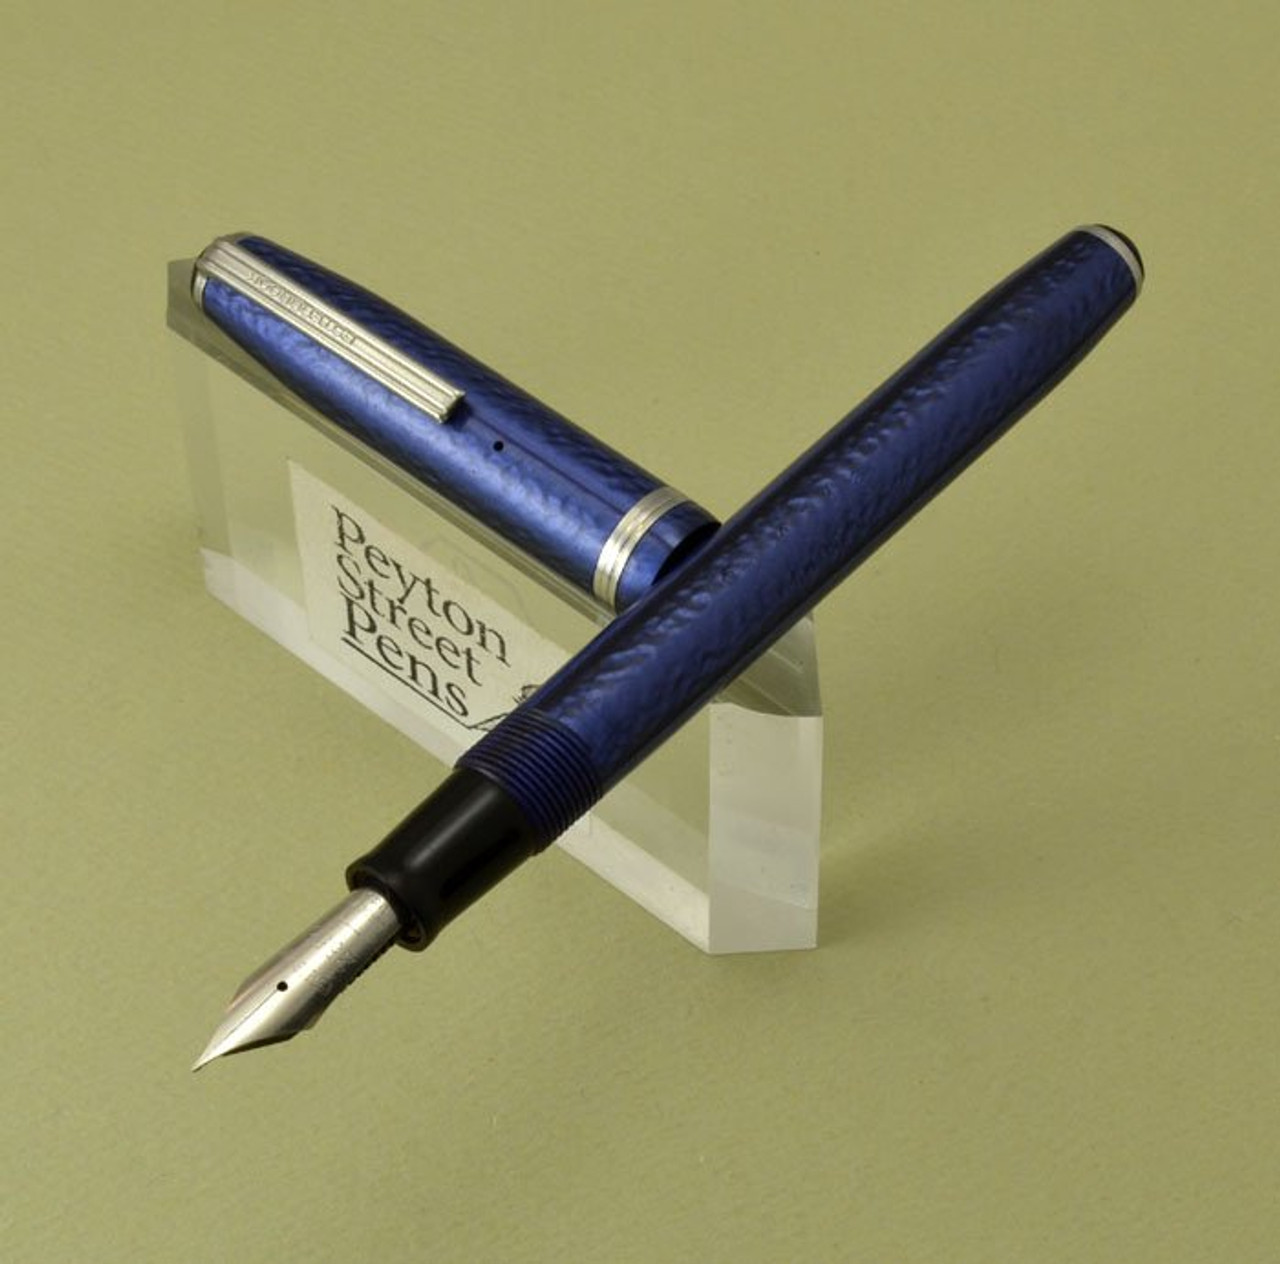 Esterbrook LJ Fountain Pen - Blue, 2556 Fine Nib (Very Nice, Restored)